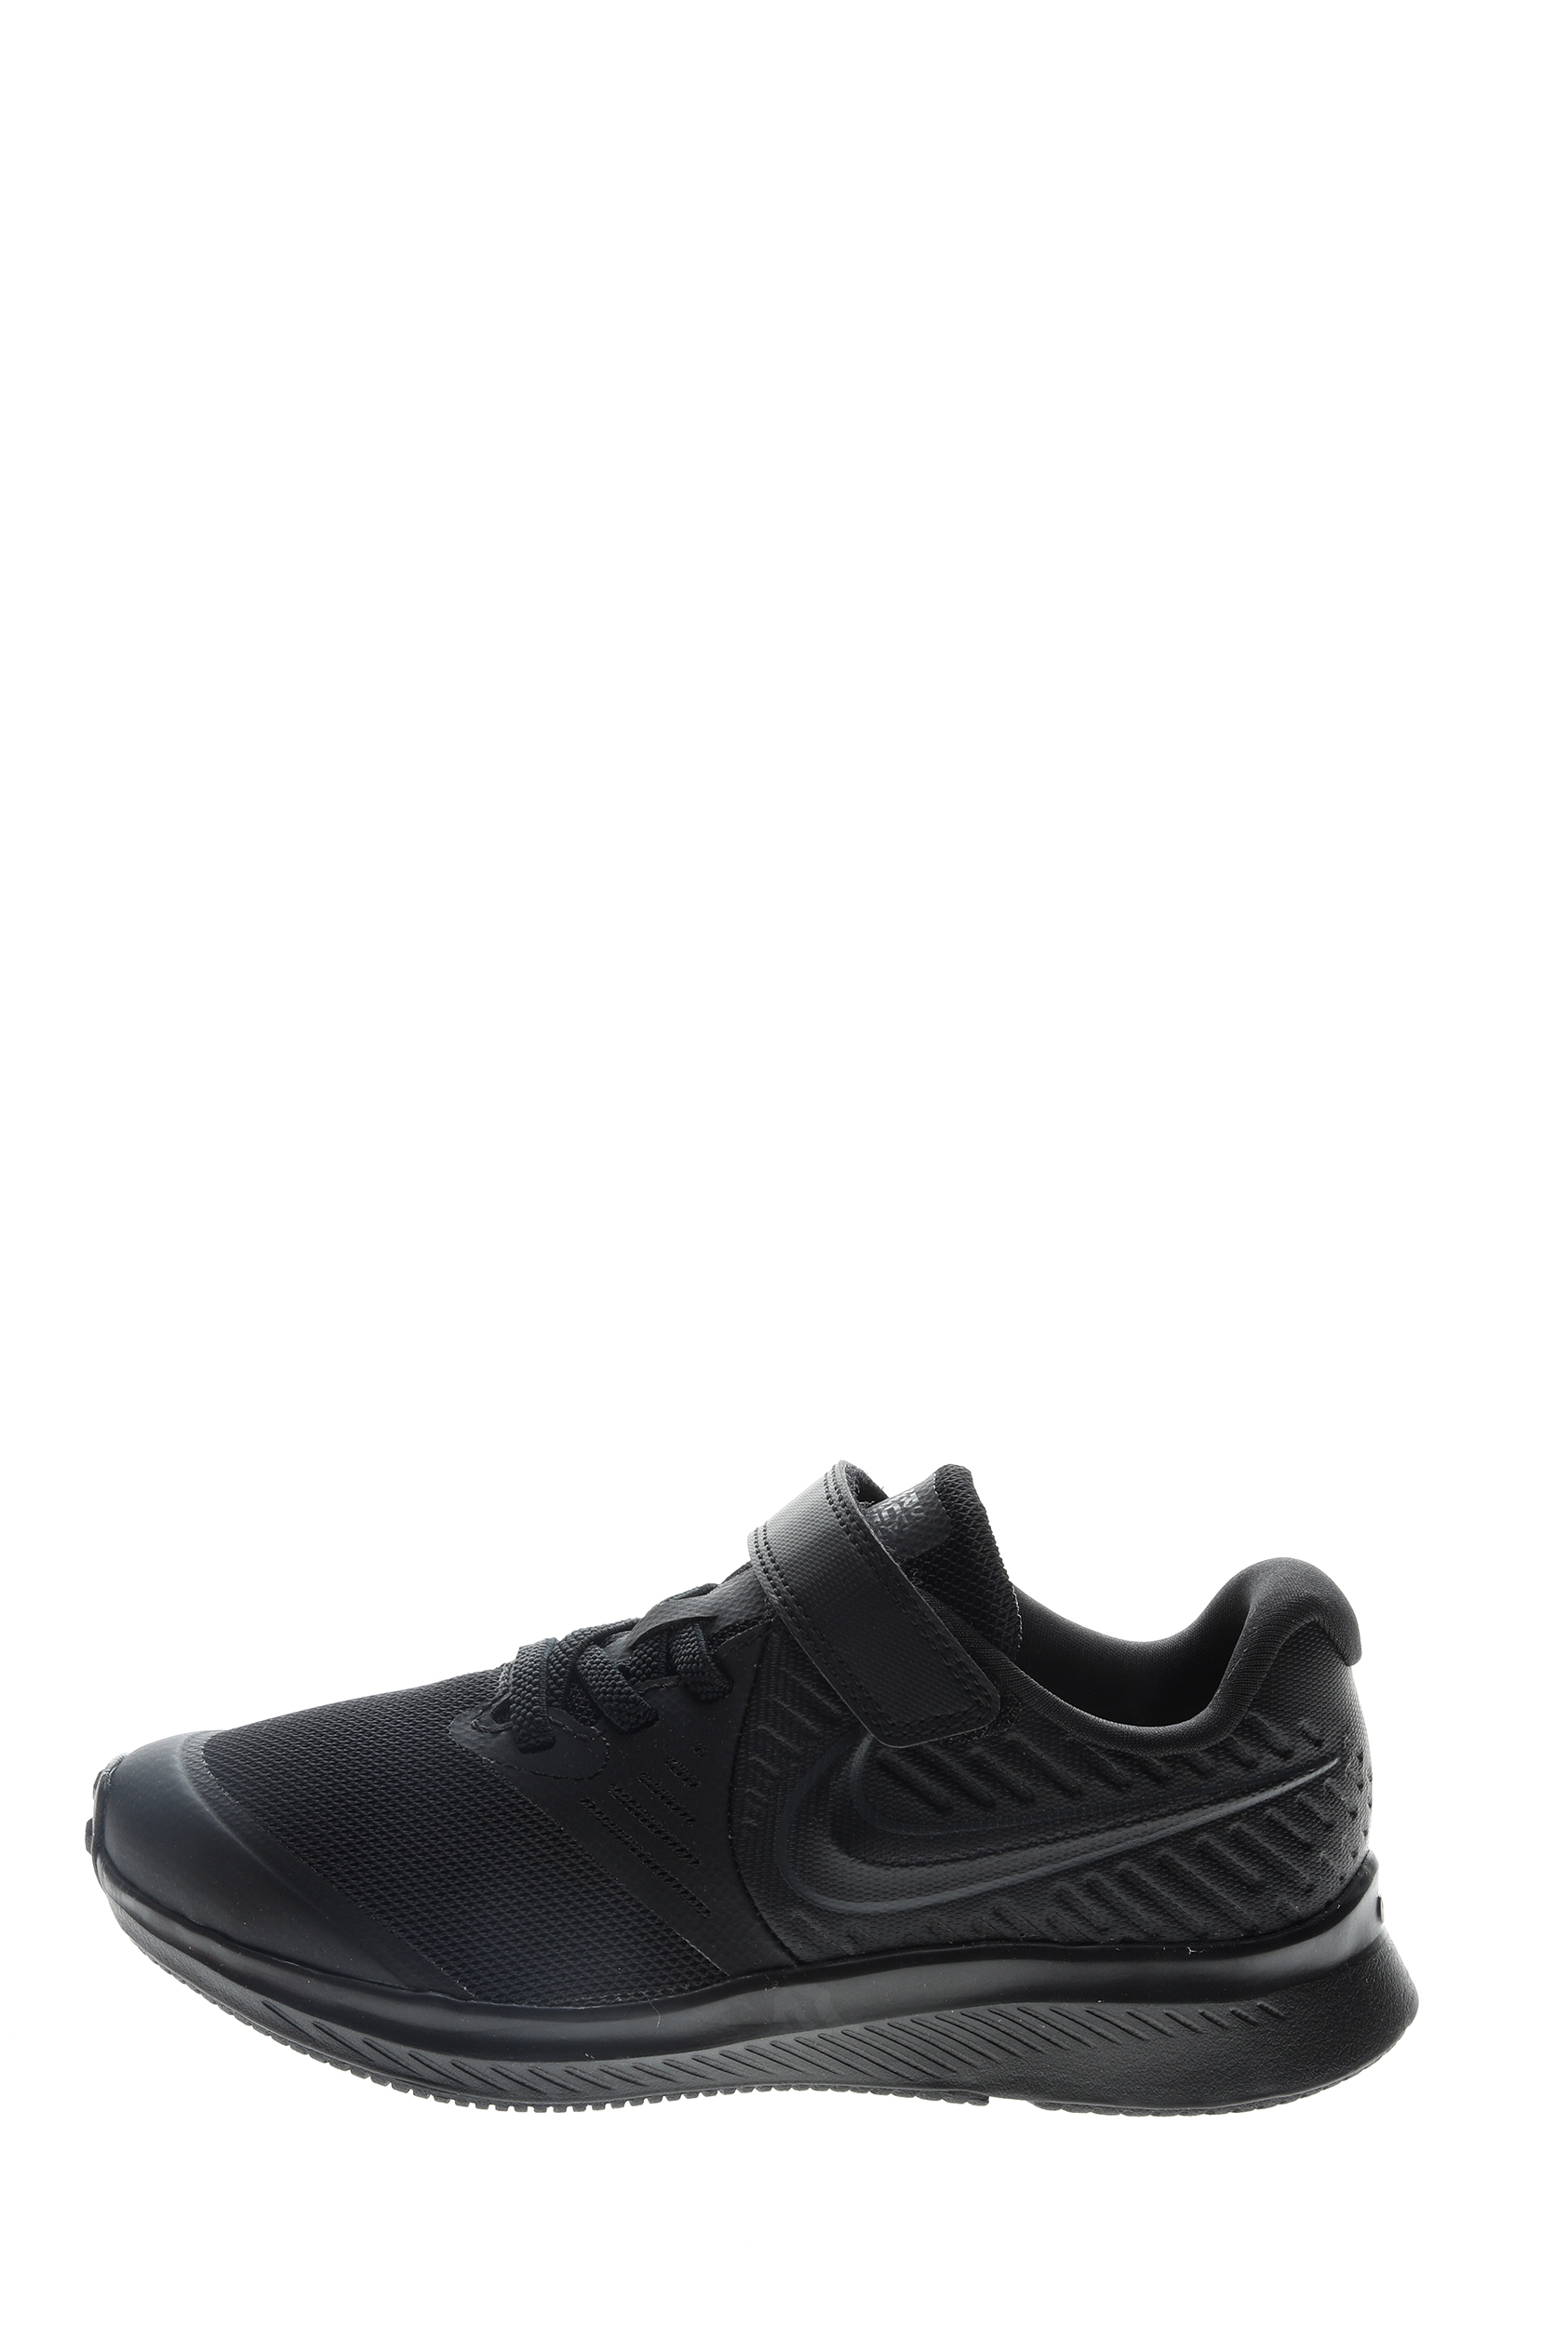 Παιδικά/Boys/Παπούτσια/Αθλητικά NIKE - Παιδικά παπούτσια running NIKE STAR RUNNER 2 (PSV) μαύρα